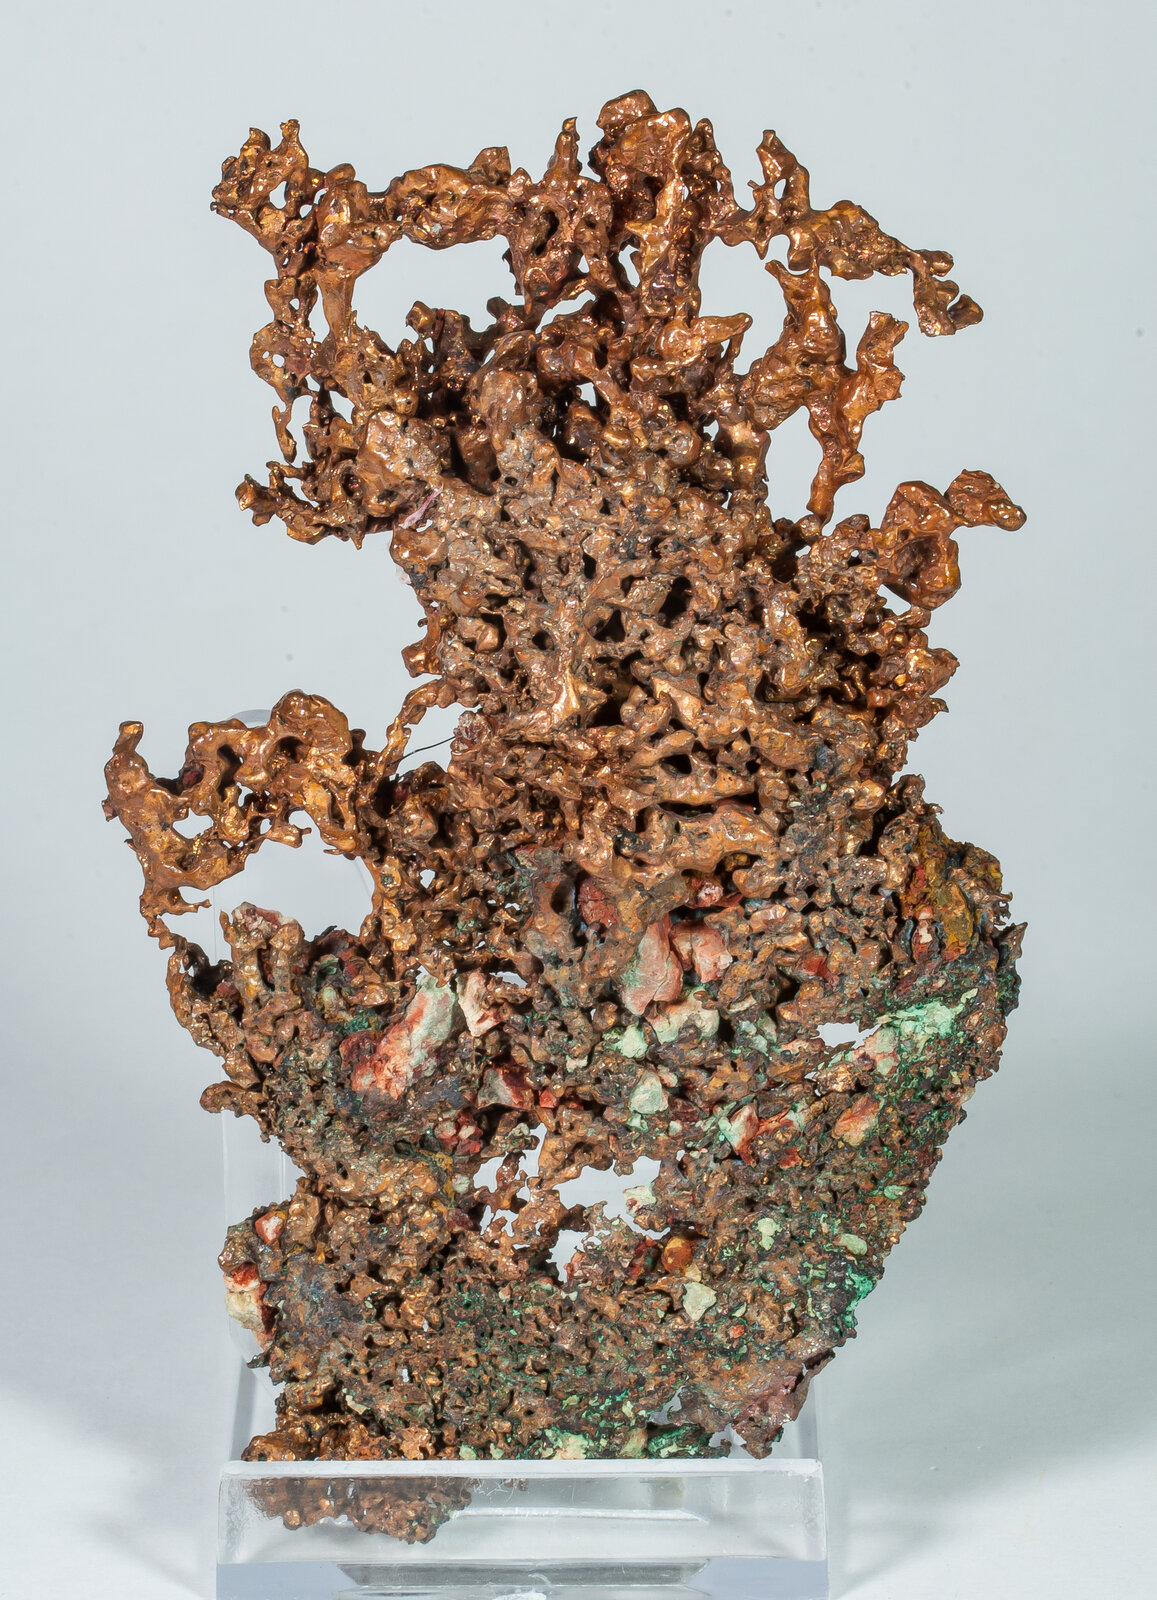 specimens/s_imagesAO8/Copper-NRF46AO8r.jpg